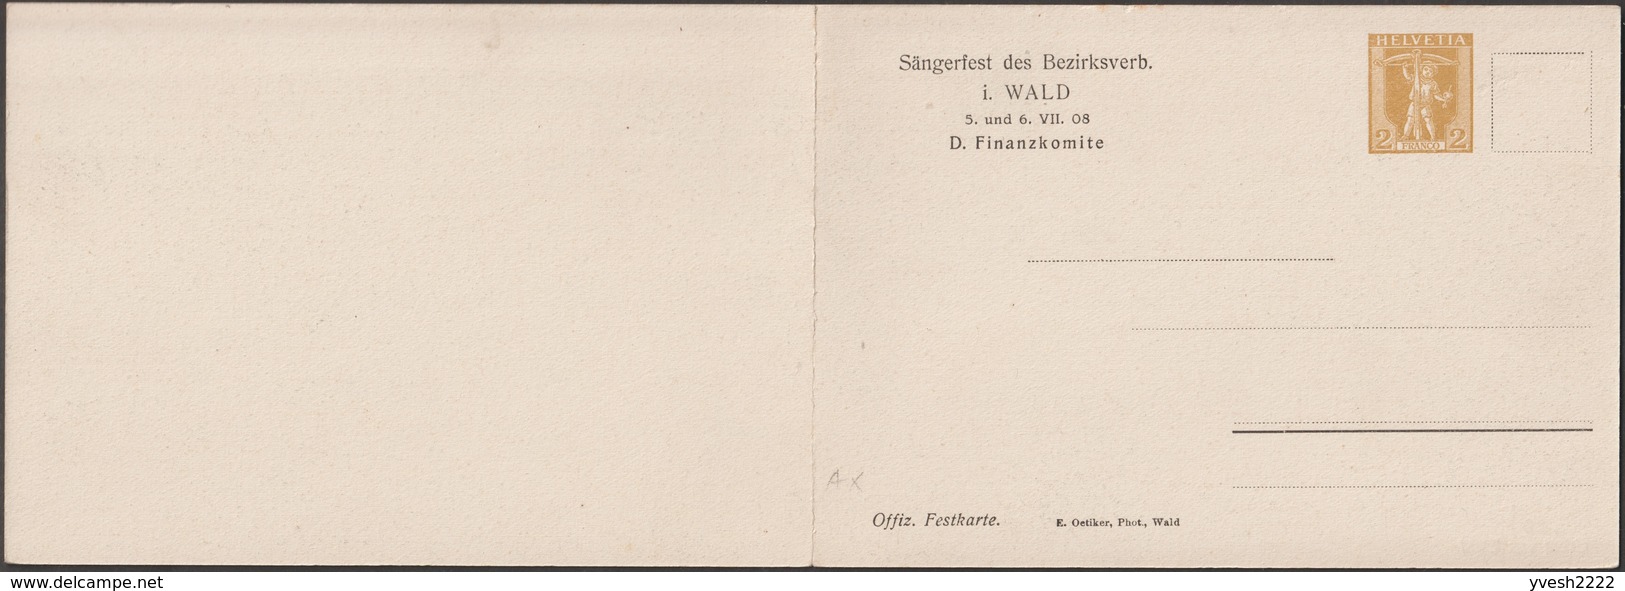 Suisse 1908. Carte Postale, Entier Postal Double. Wald, Zurich. Vue Panoramique De La Commune Et Des Alpes. Musique - Montagnes